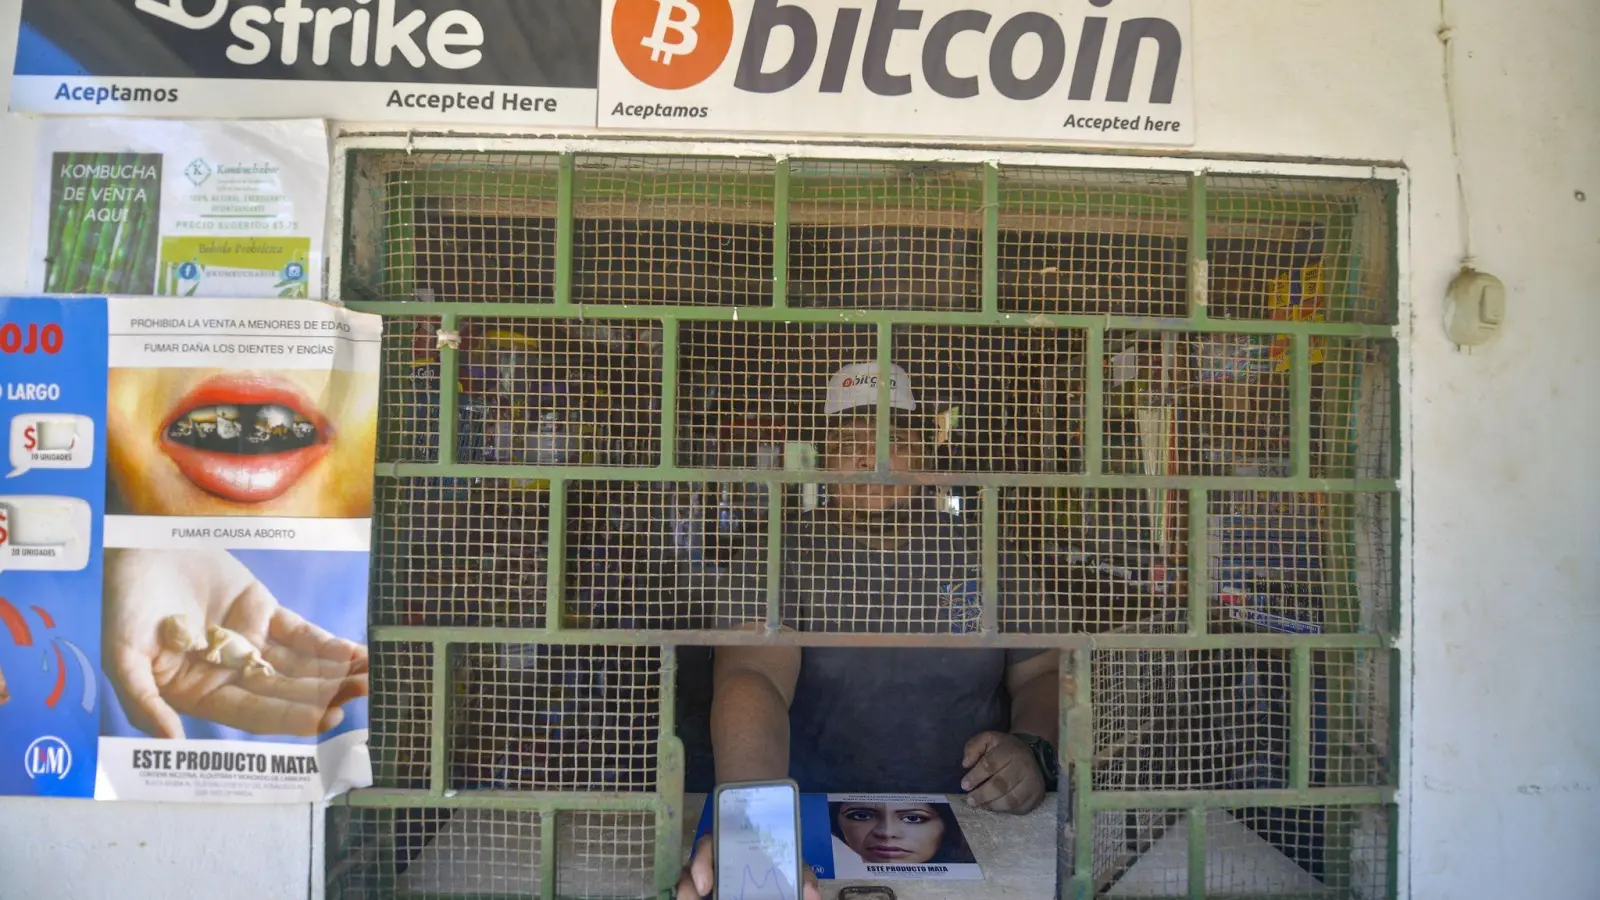 Ein Geschäft in Chiltuipan, das Bitcoin akzeptiert. El Salvador hat als erstes Land der Welt die Kryptowährung eingeführt. (Foto: Camilo Freedman/SOPA Images via ZUMA Wire/dpa)